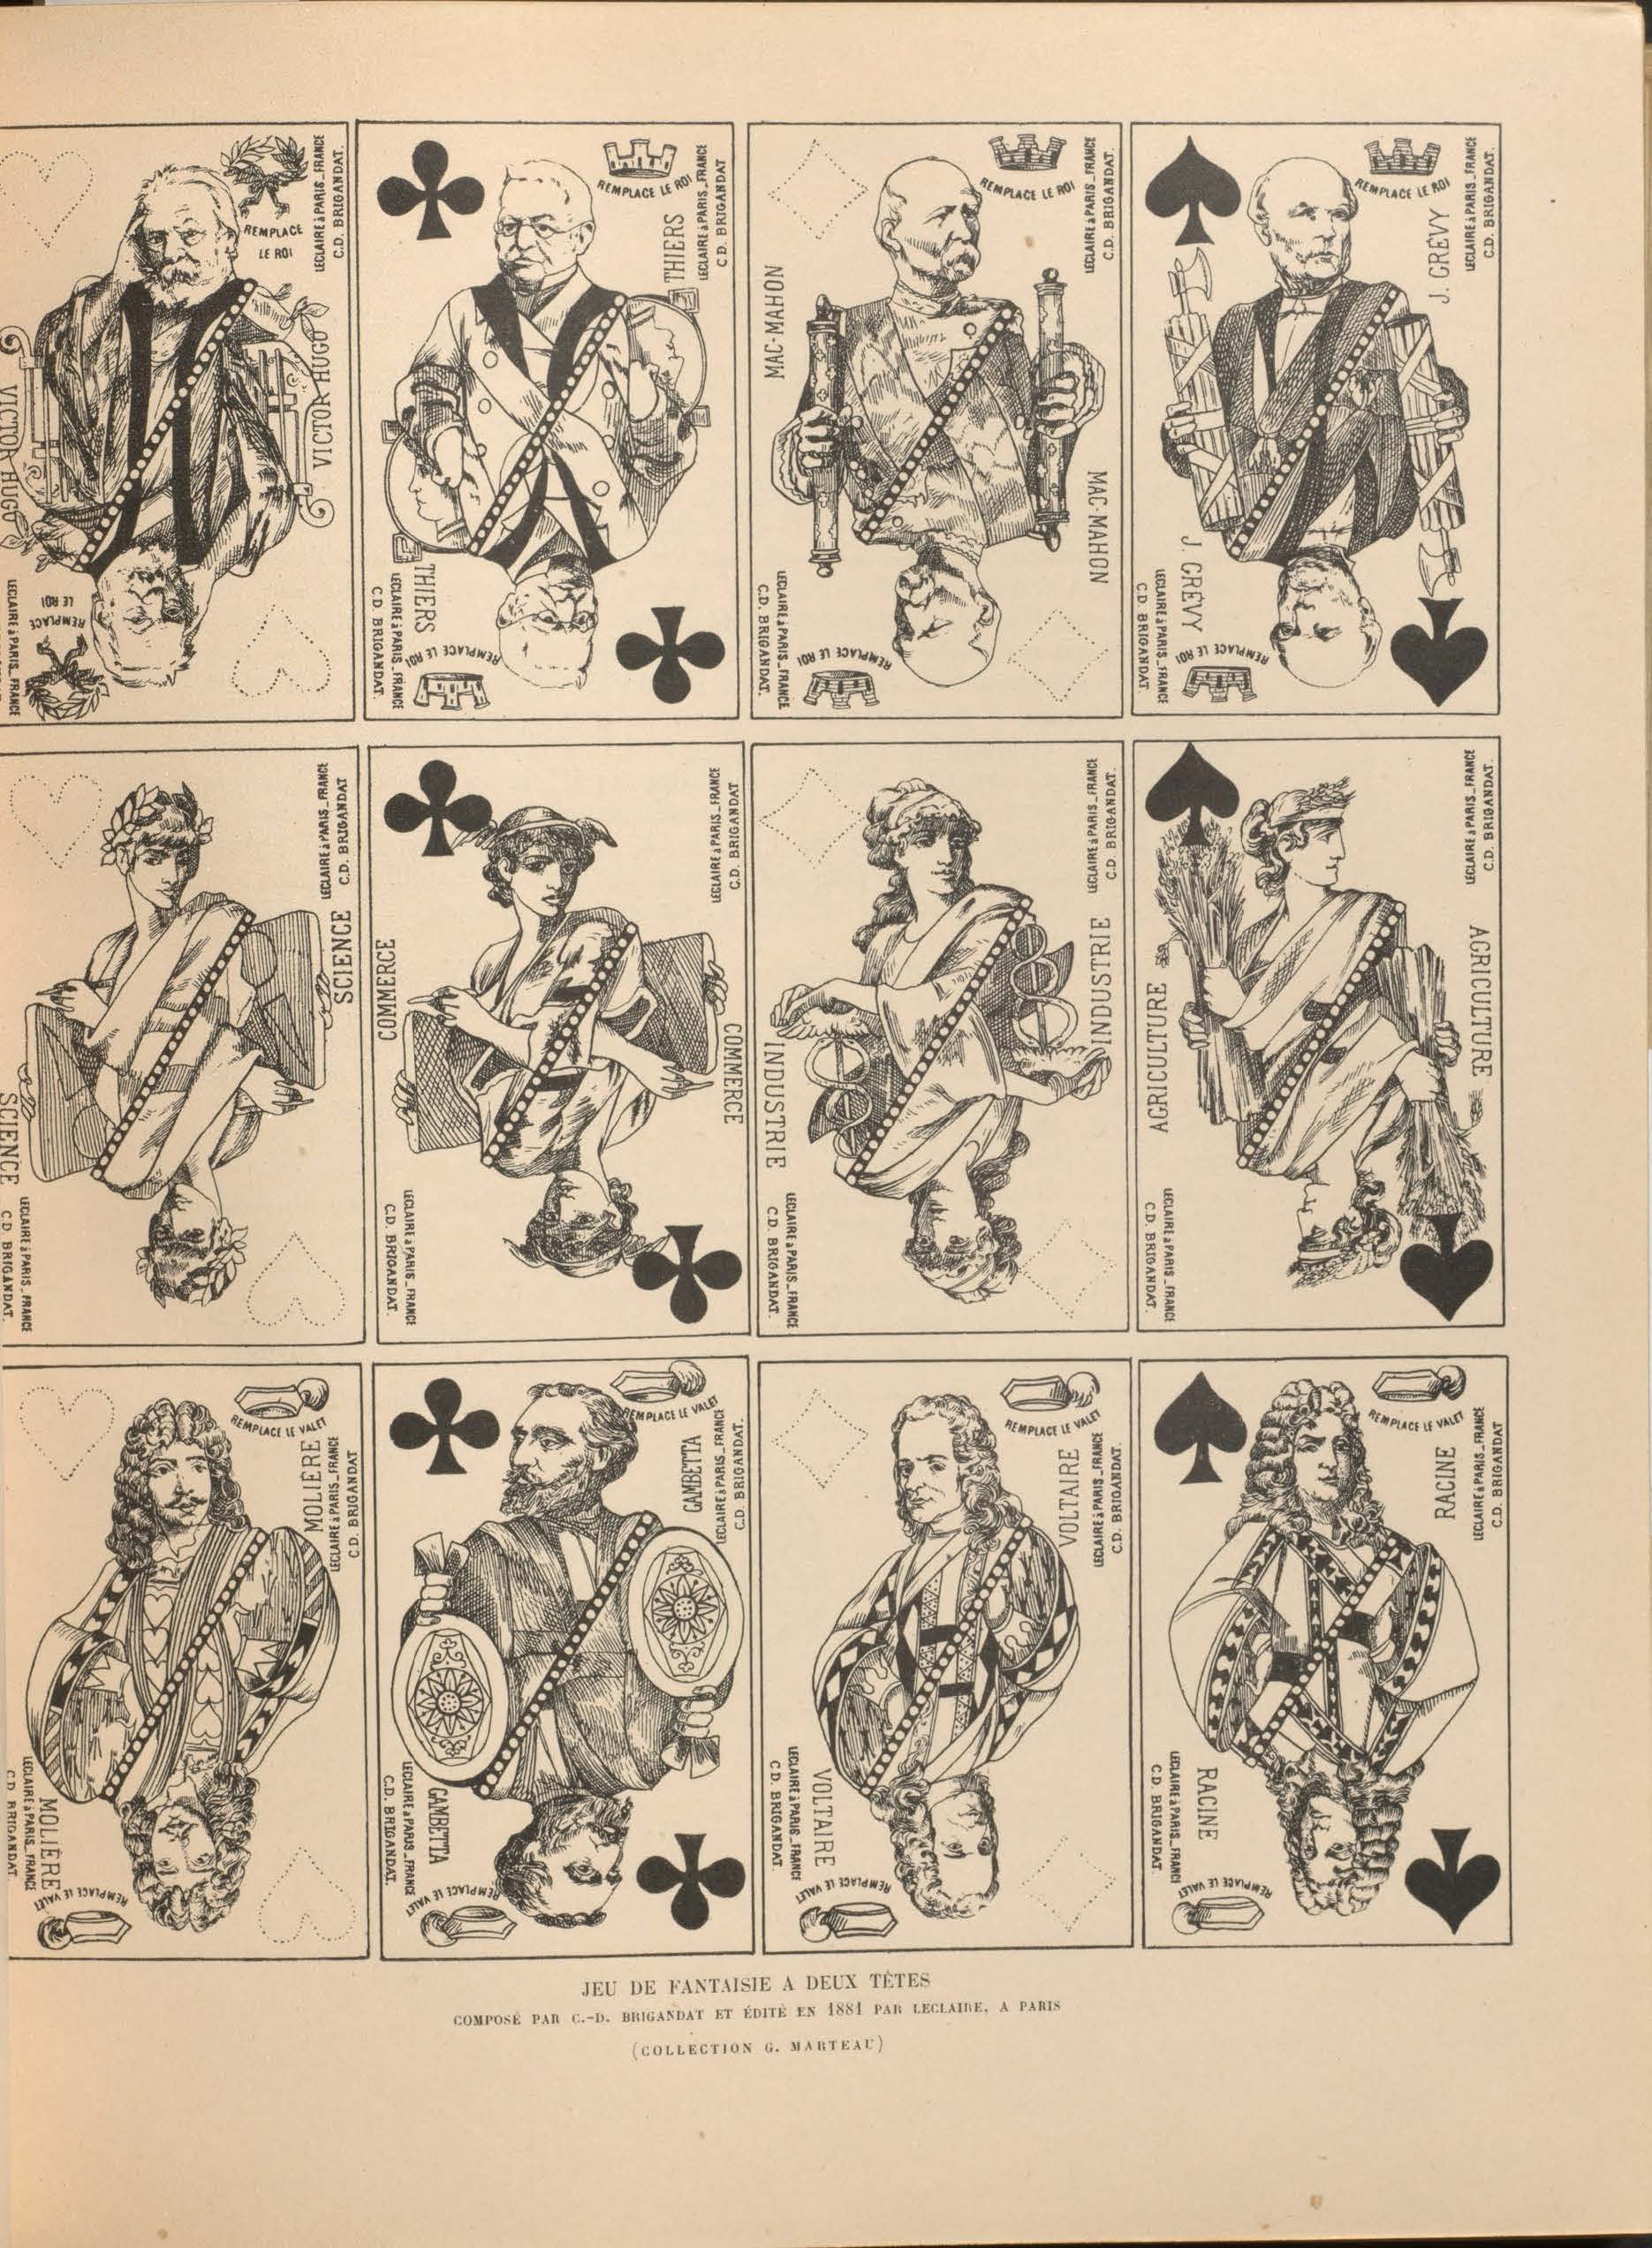 Allemagne, H. R. (1906). Les cartes à jouer du XIV au XX siècle.  Volume 1, page 29.